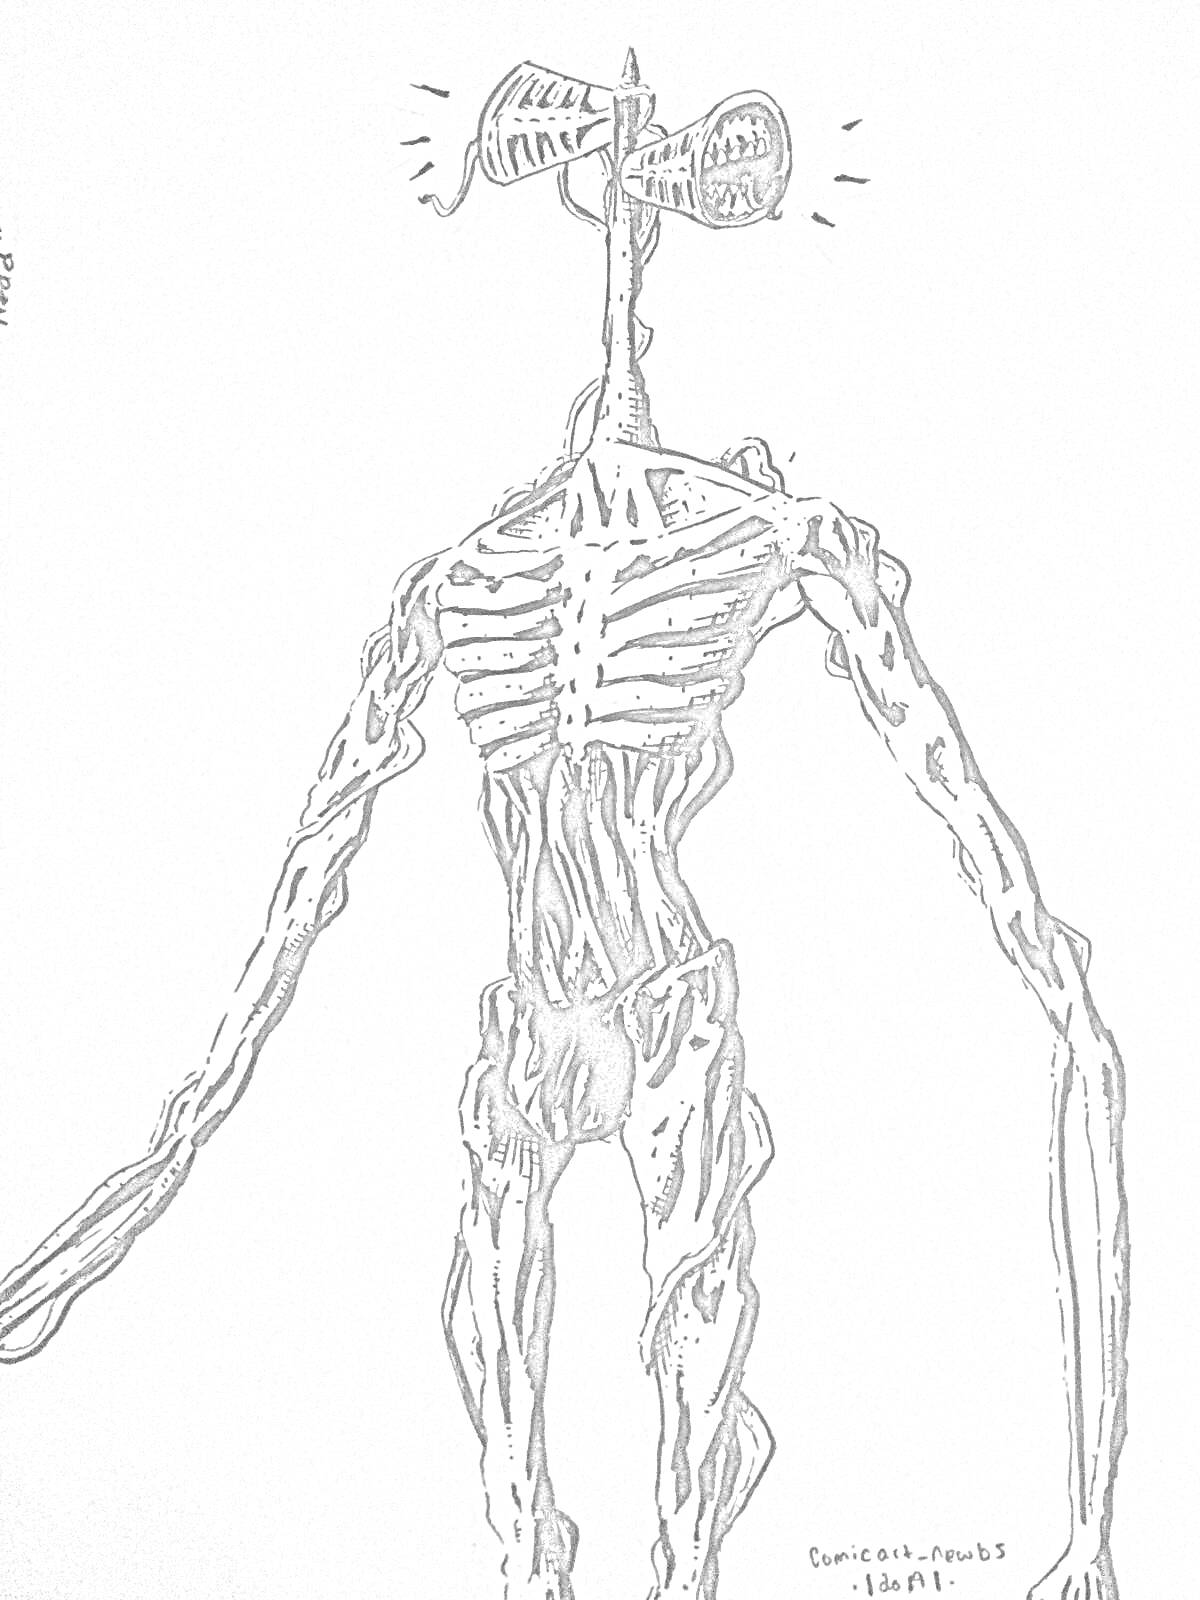 Раскраска Гуманоидное существо с сиренами вместо головы и с худым, вытянутым телом.